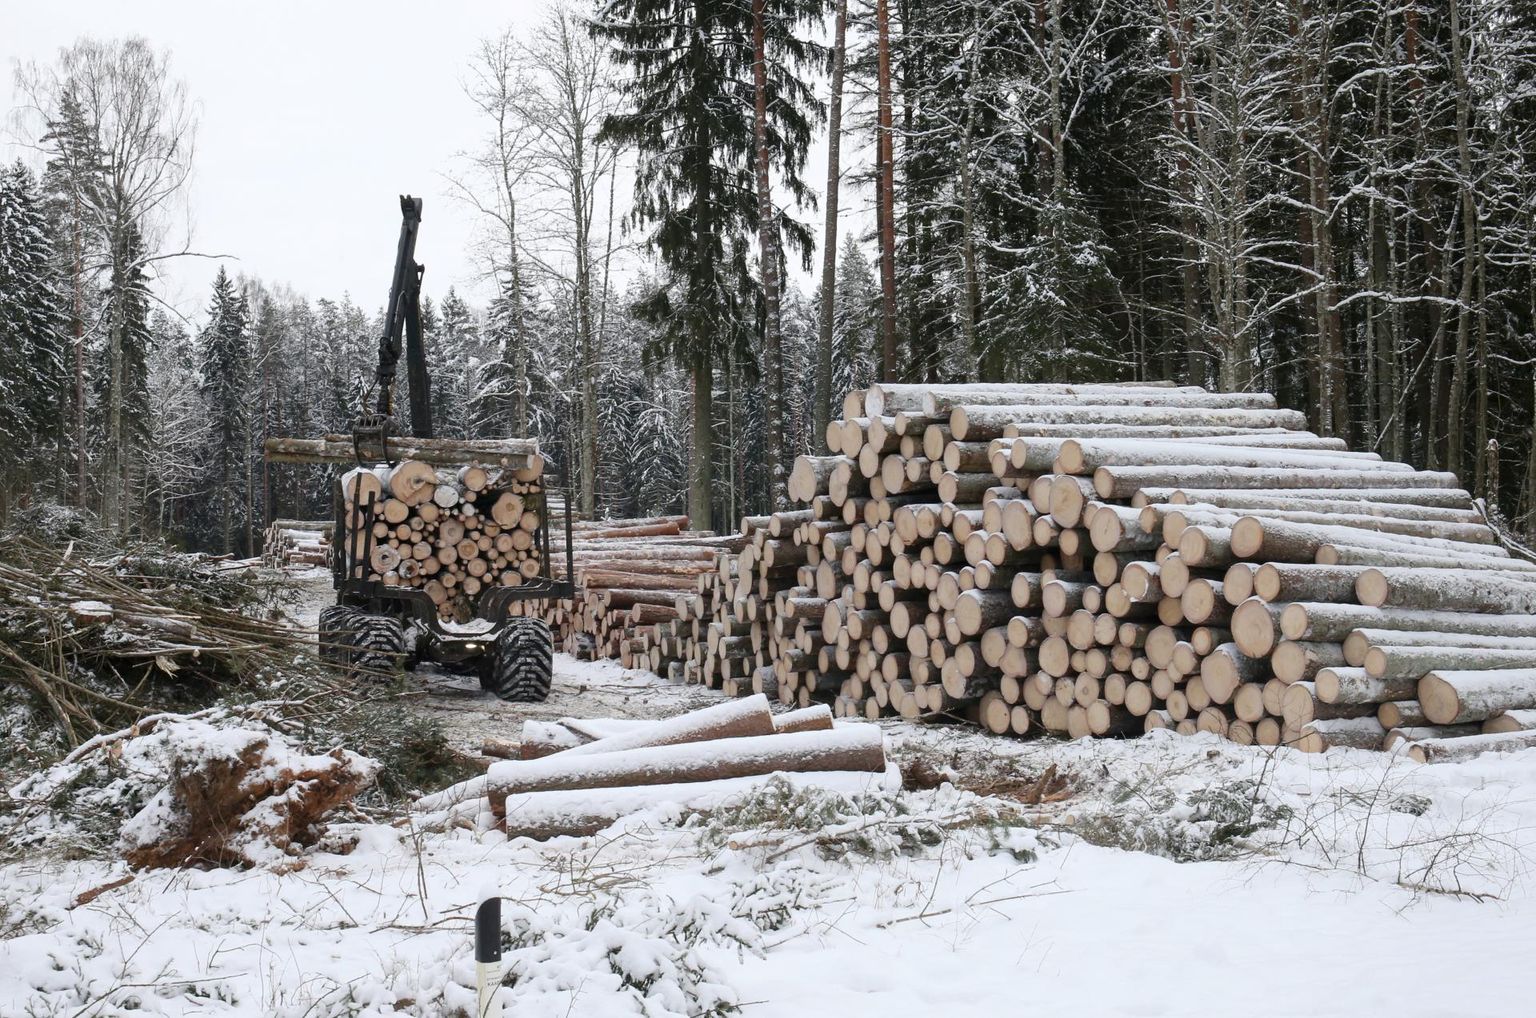 Miks Eesti metsa kasvab paberil muudkui juurde, kui päris metsas puidutagavara üha väheneb, sellele küsimusele avalikkus vastust ei saanud.